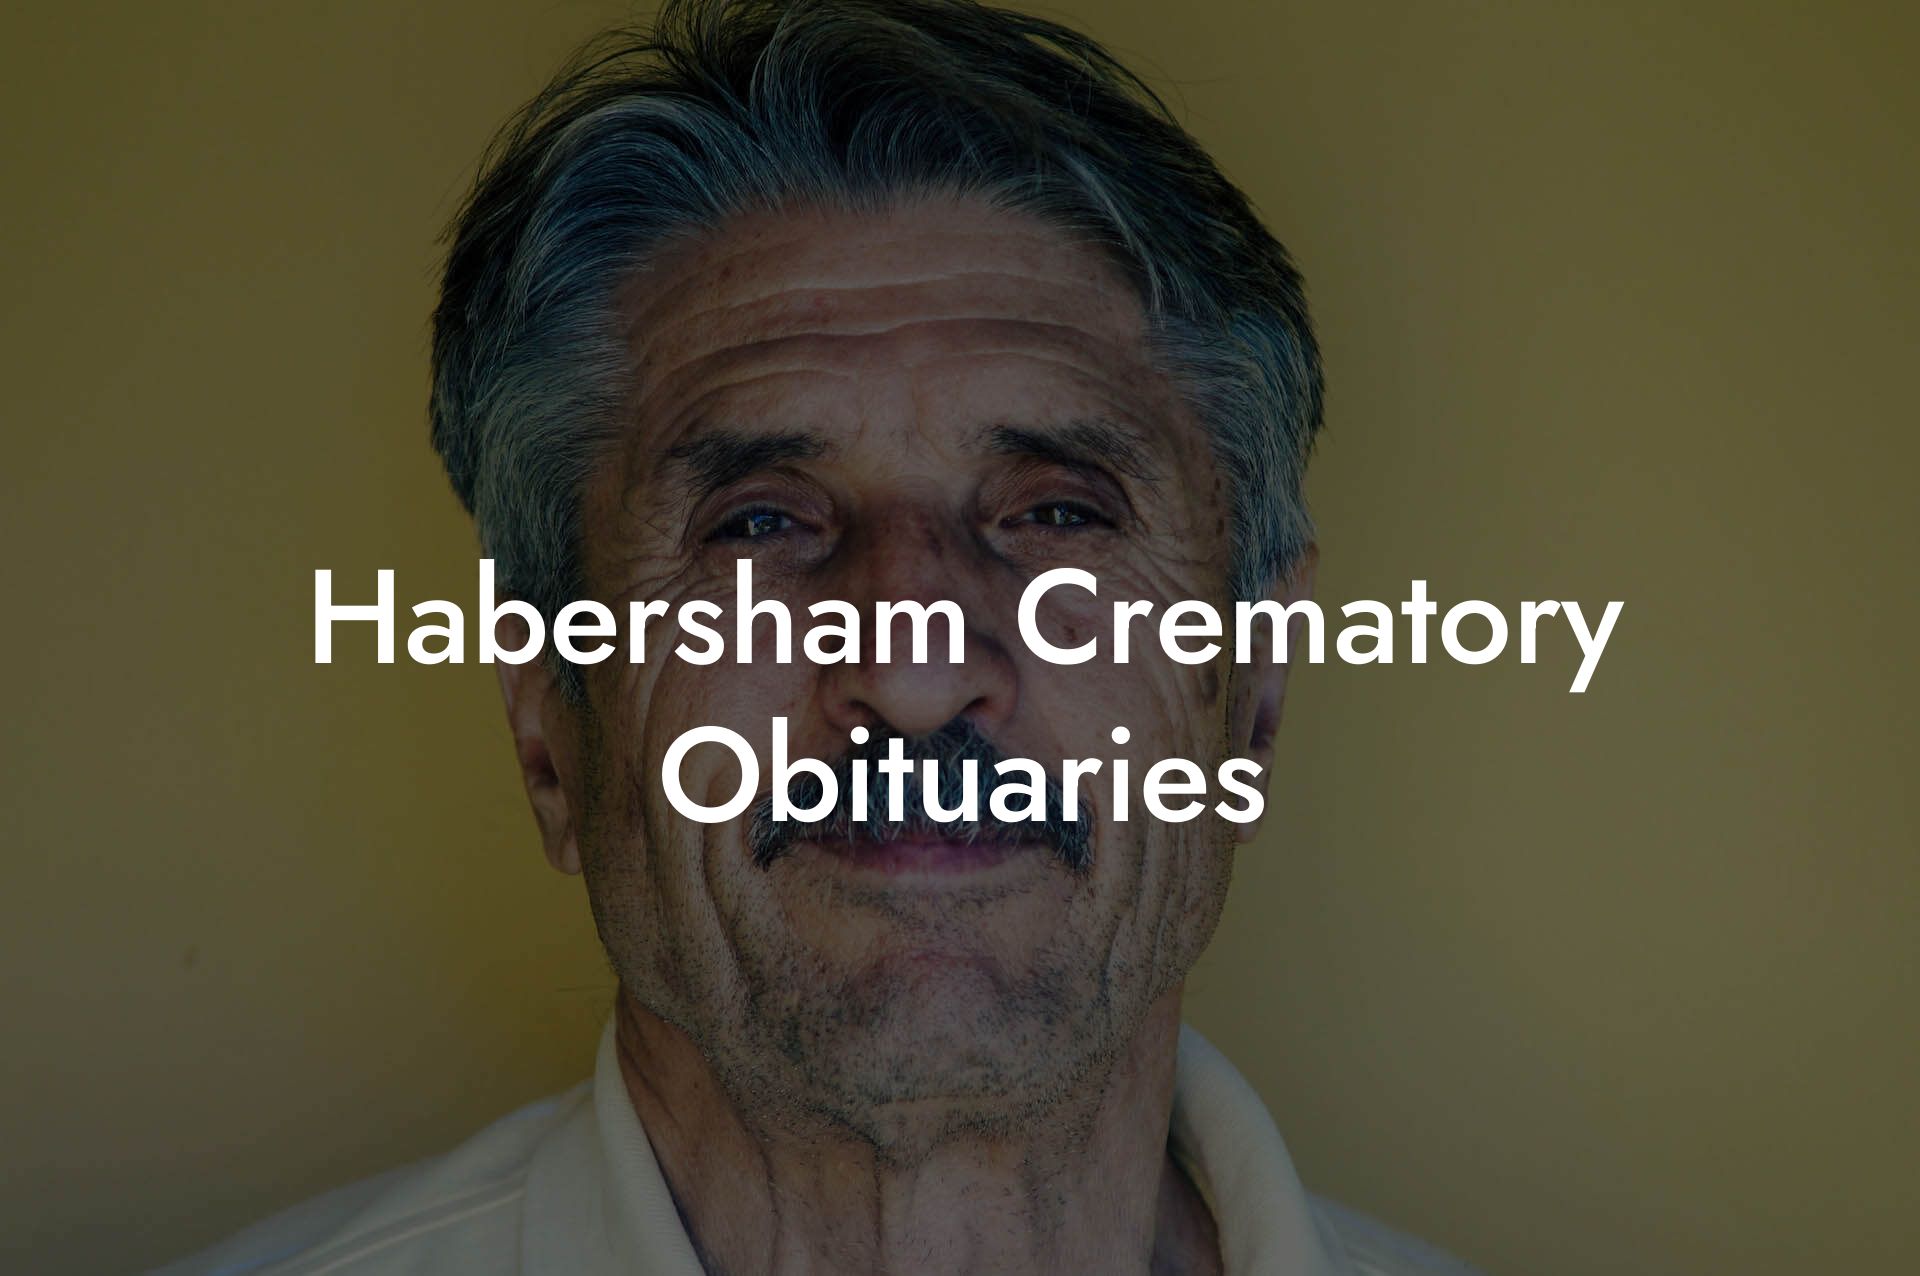 Habersham Crematory Obituaries